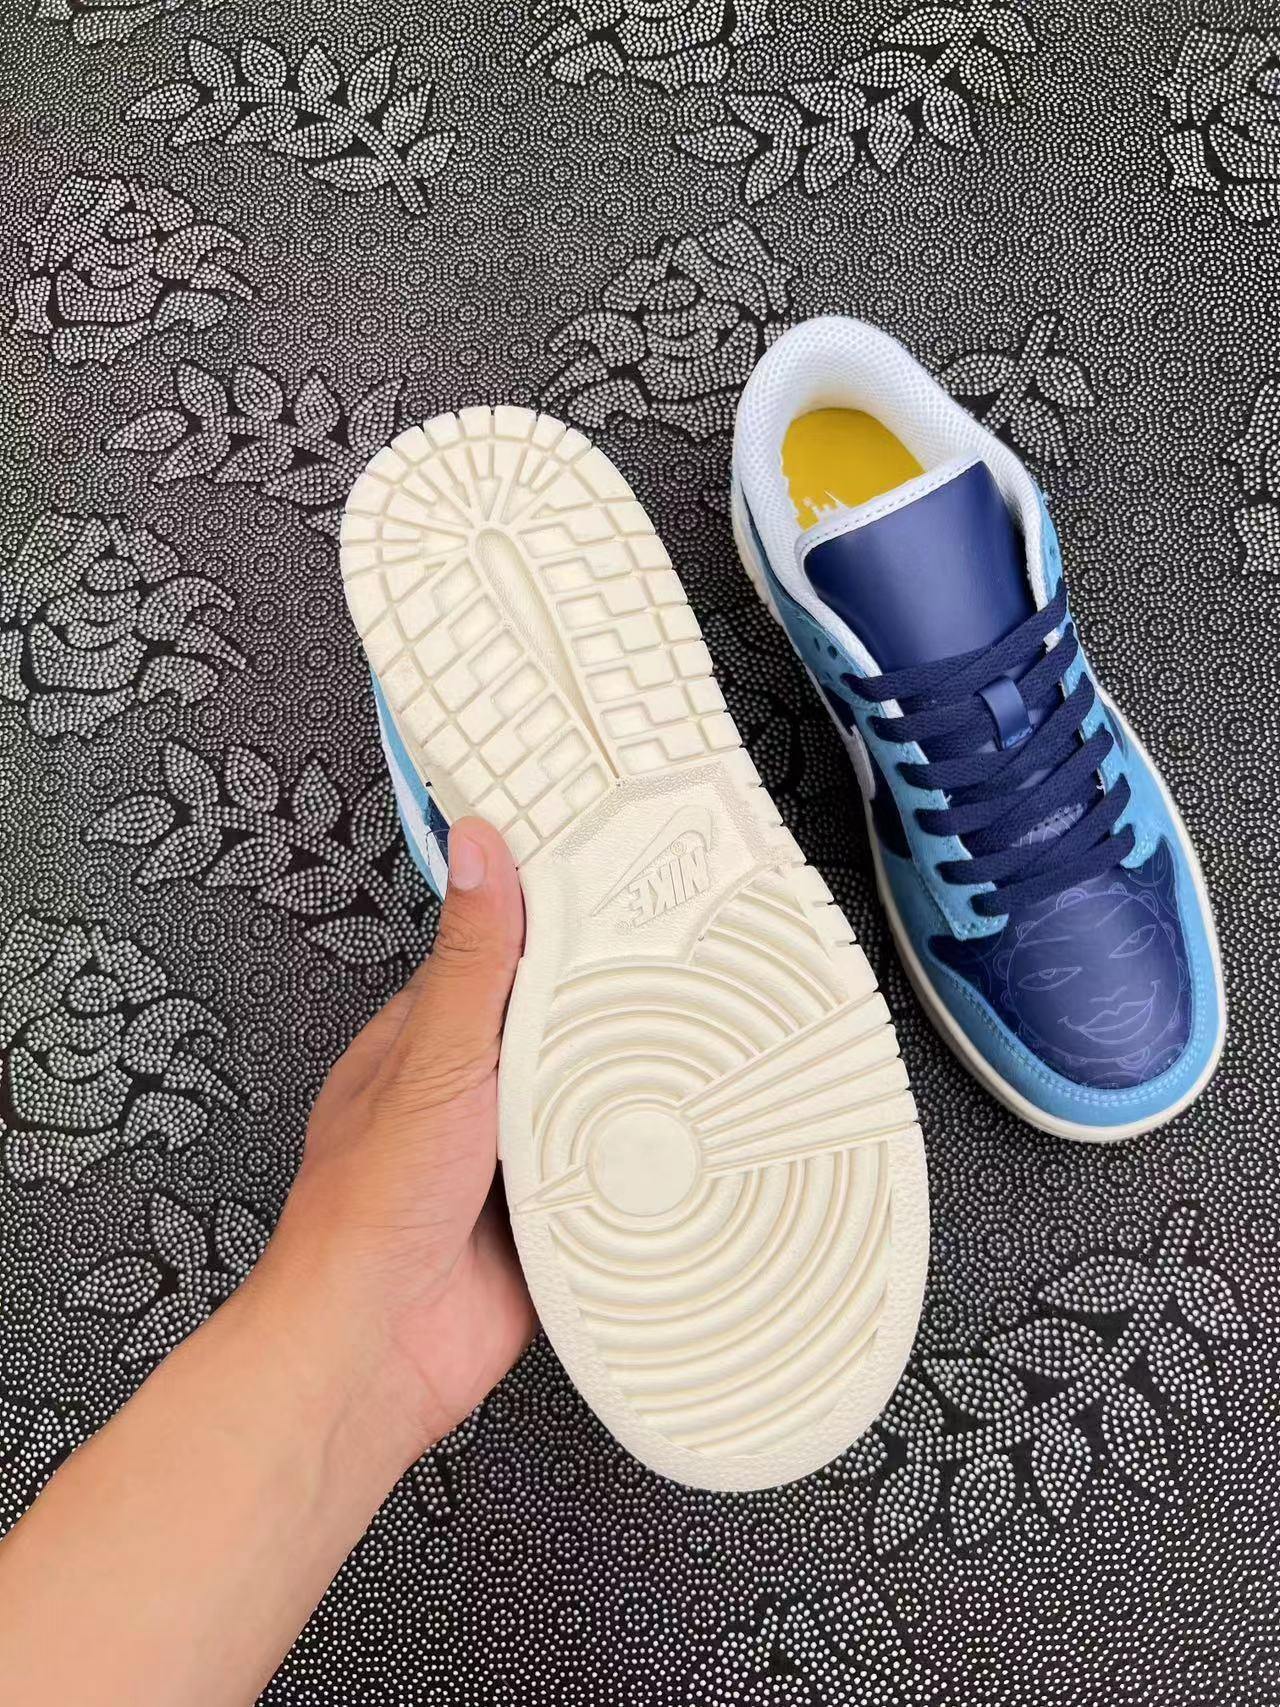 ? 正品定制Nike Dunk SB Low 树莓美式复古板鞋 白蓝配色?